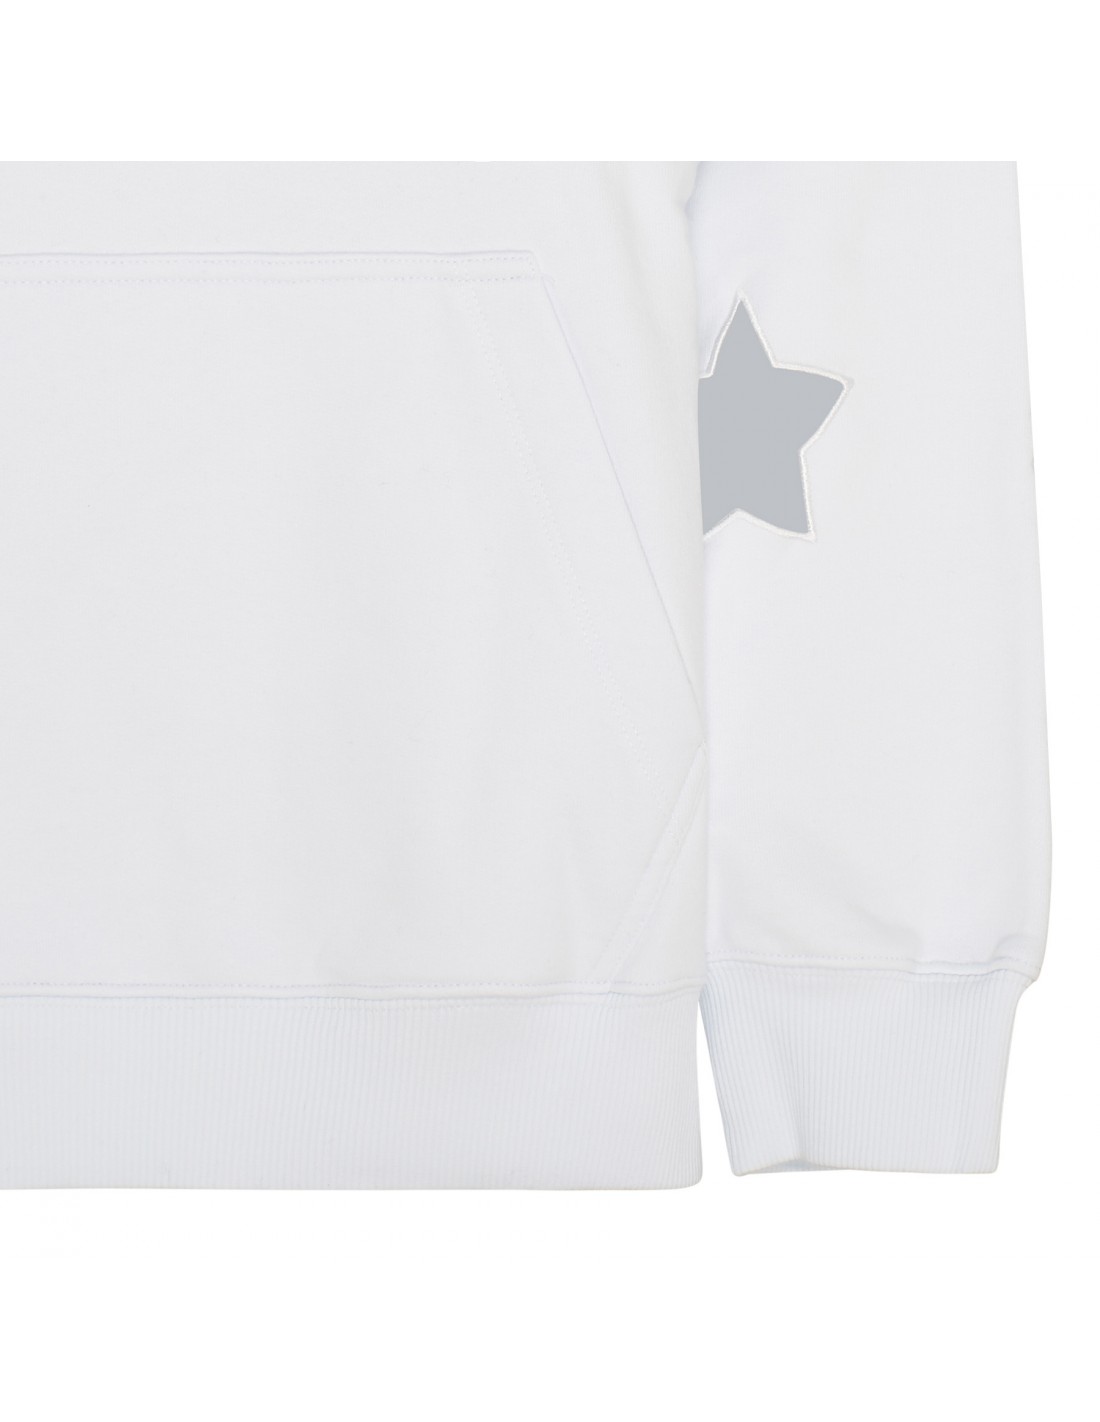 Stars white hoodie